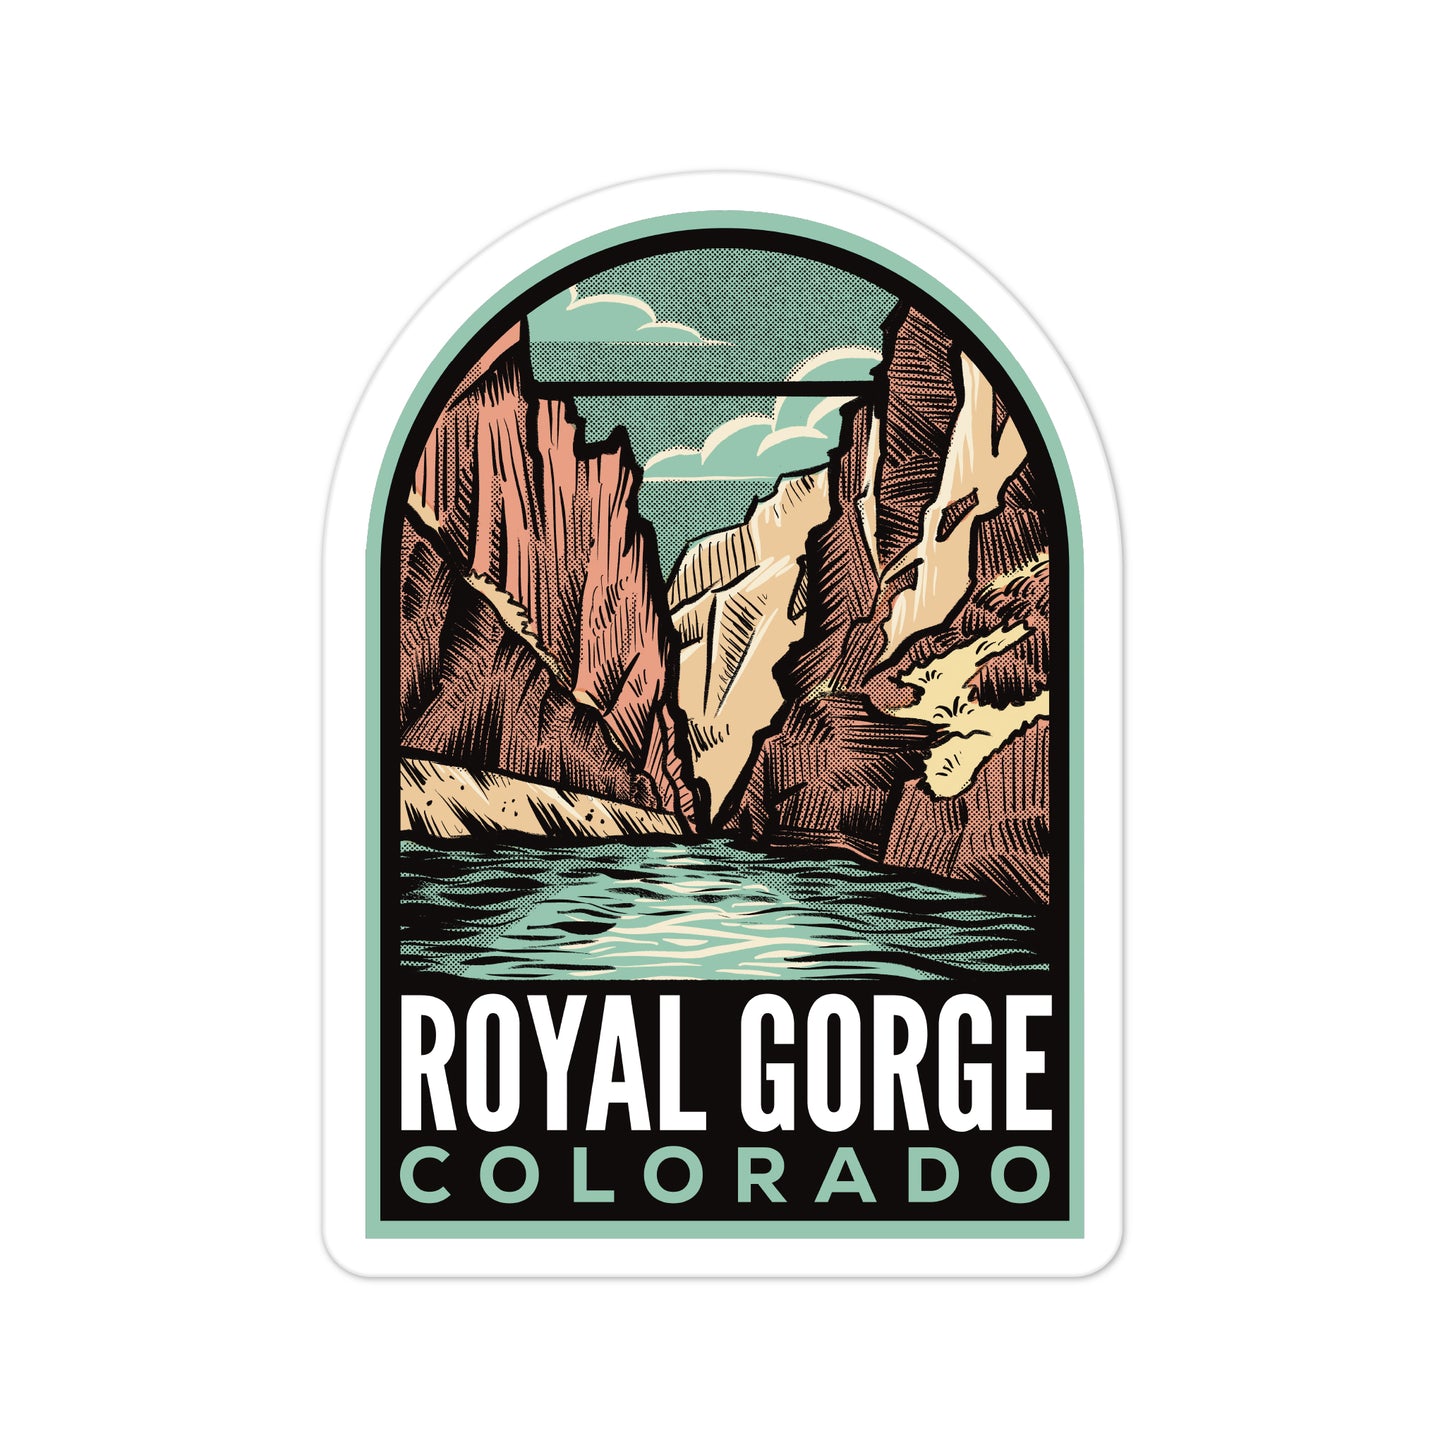 A sticker of Royal Gorge Colorado